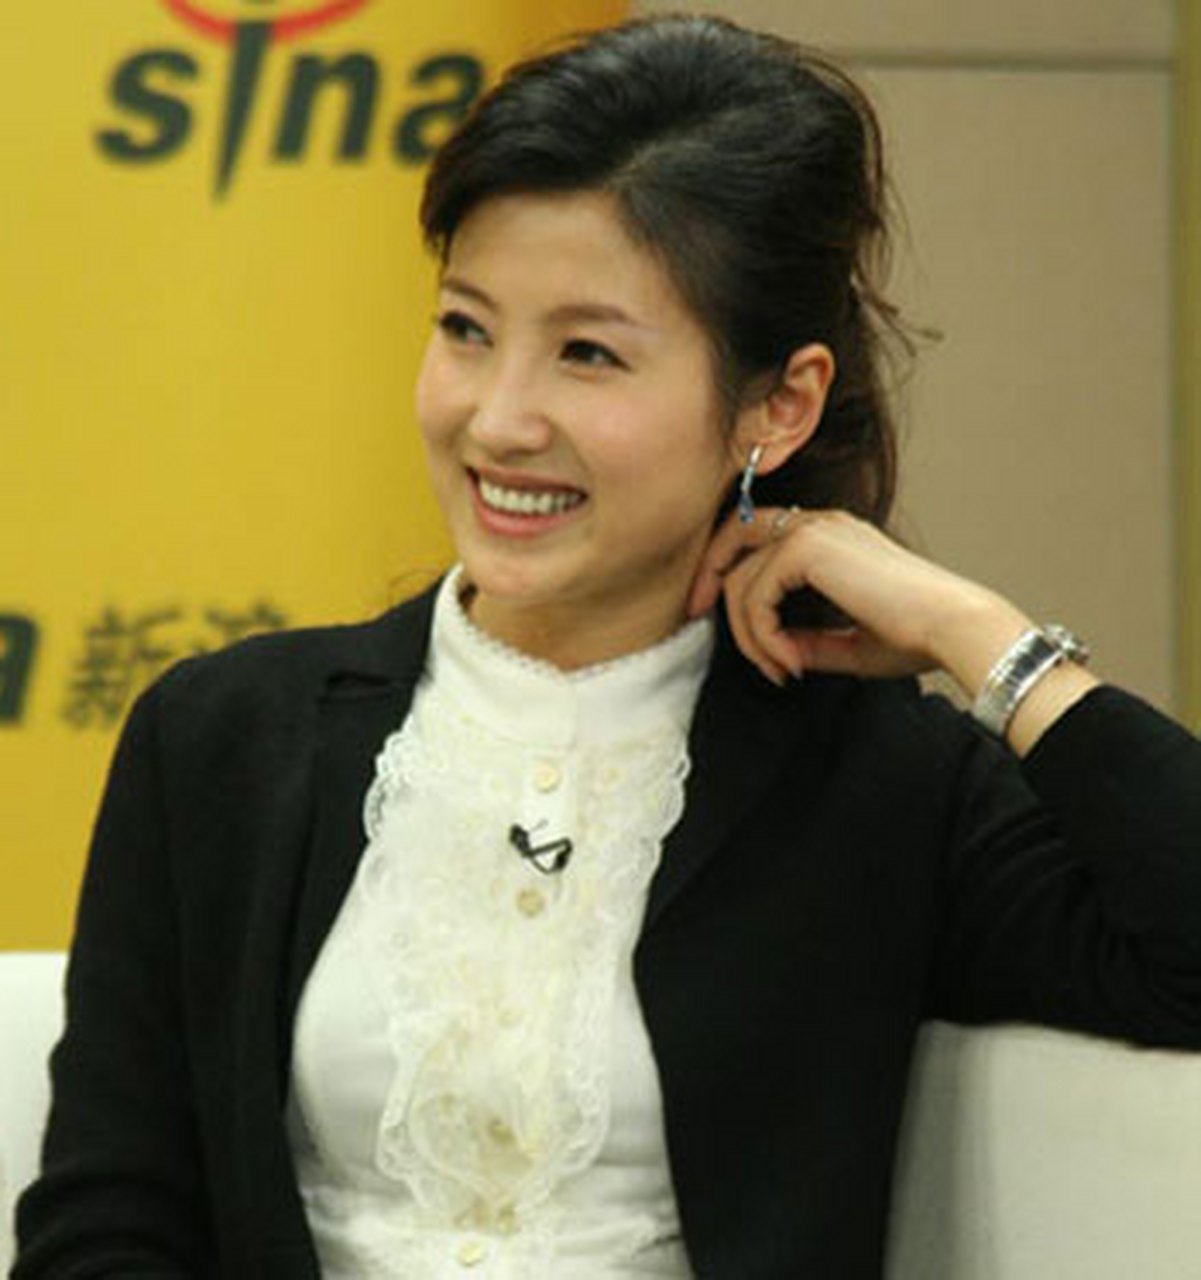 2001年,徐春妮参加中央电视台《挑战主持人》节目,并成为该节目史上